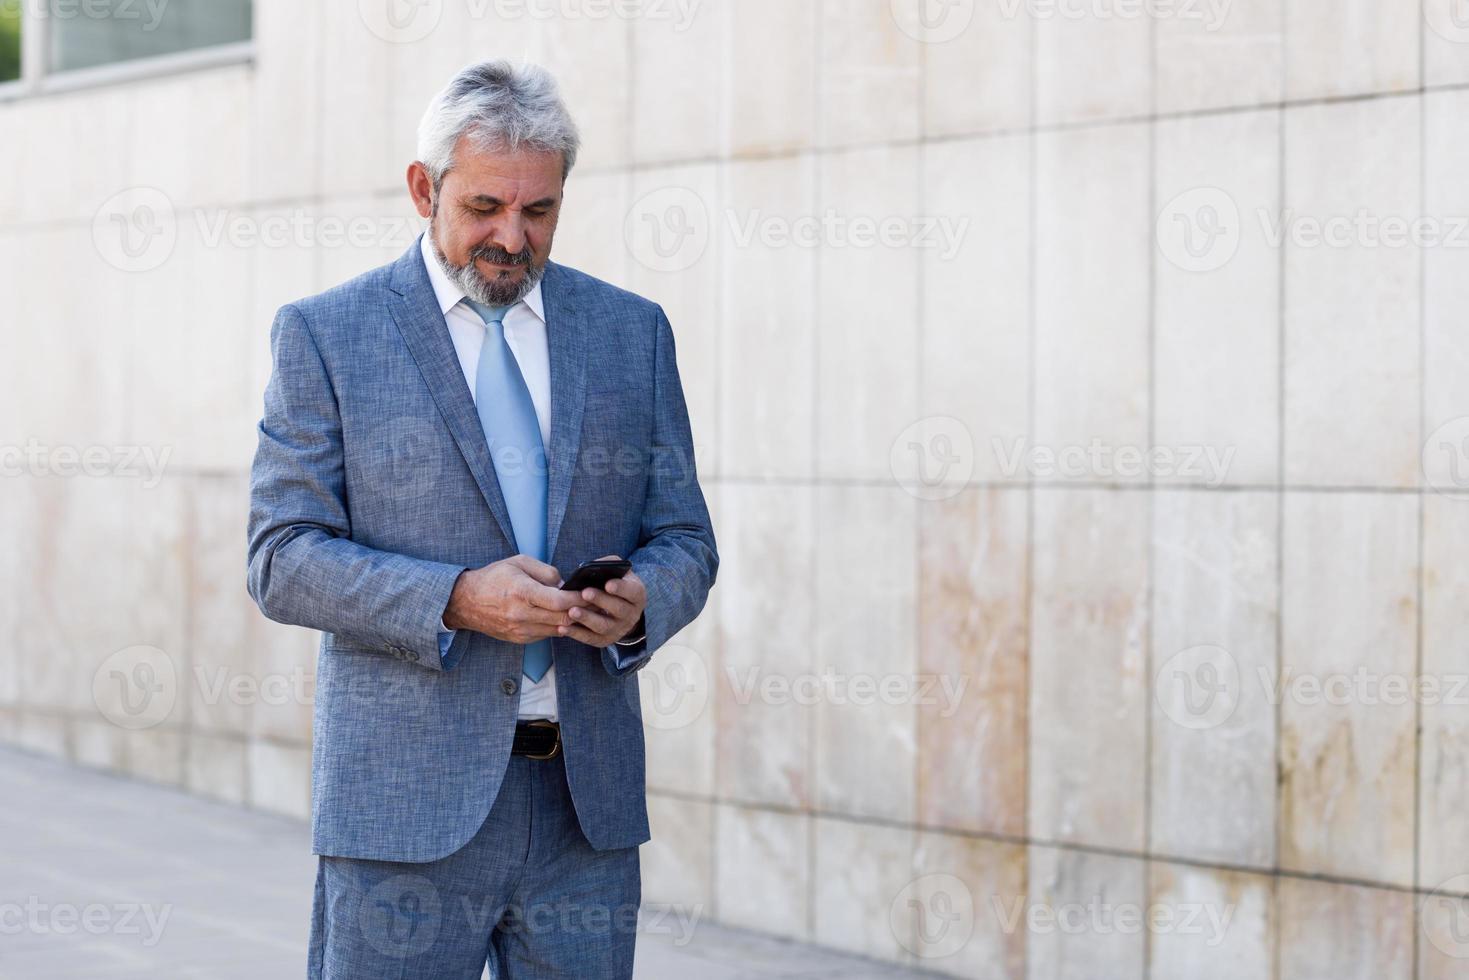 homme d'affaires senior envoyant des SMS avec un smartphone à l'extérieur d'un immeuble de bureaux moderne. photo